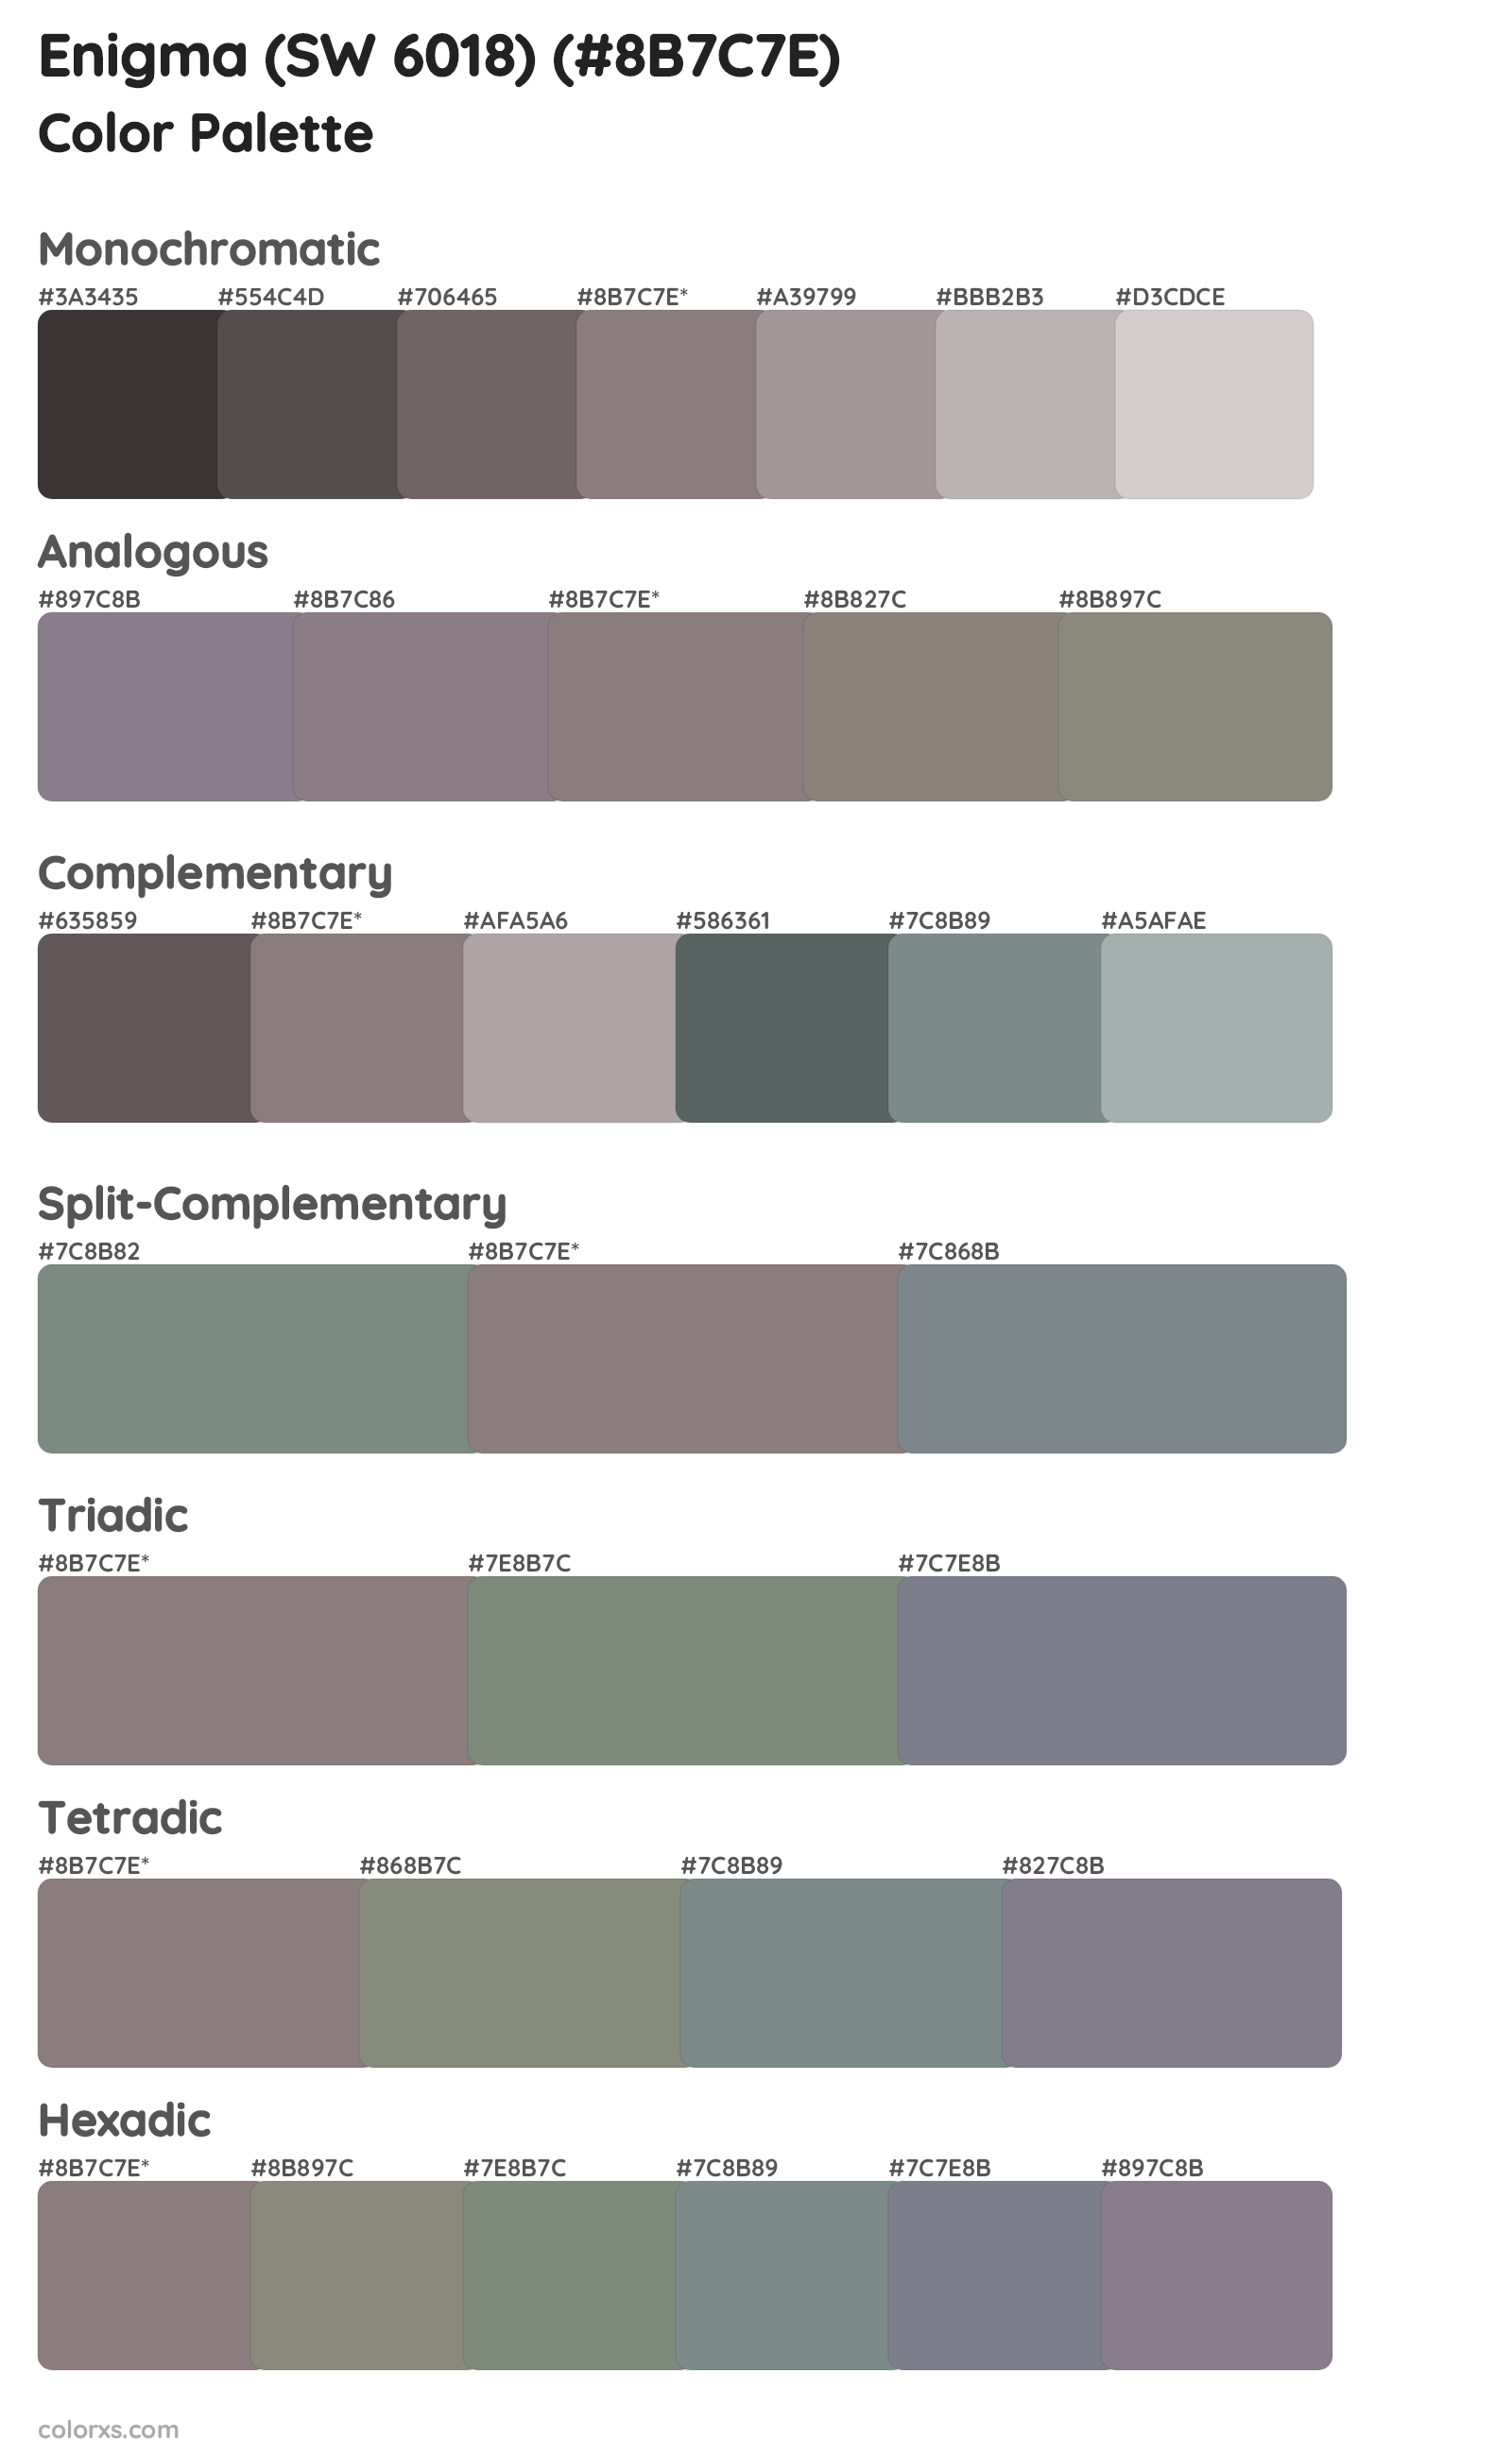 Enigma (SW 6018) Color Scheme Palettes